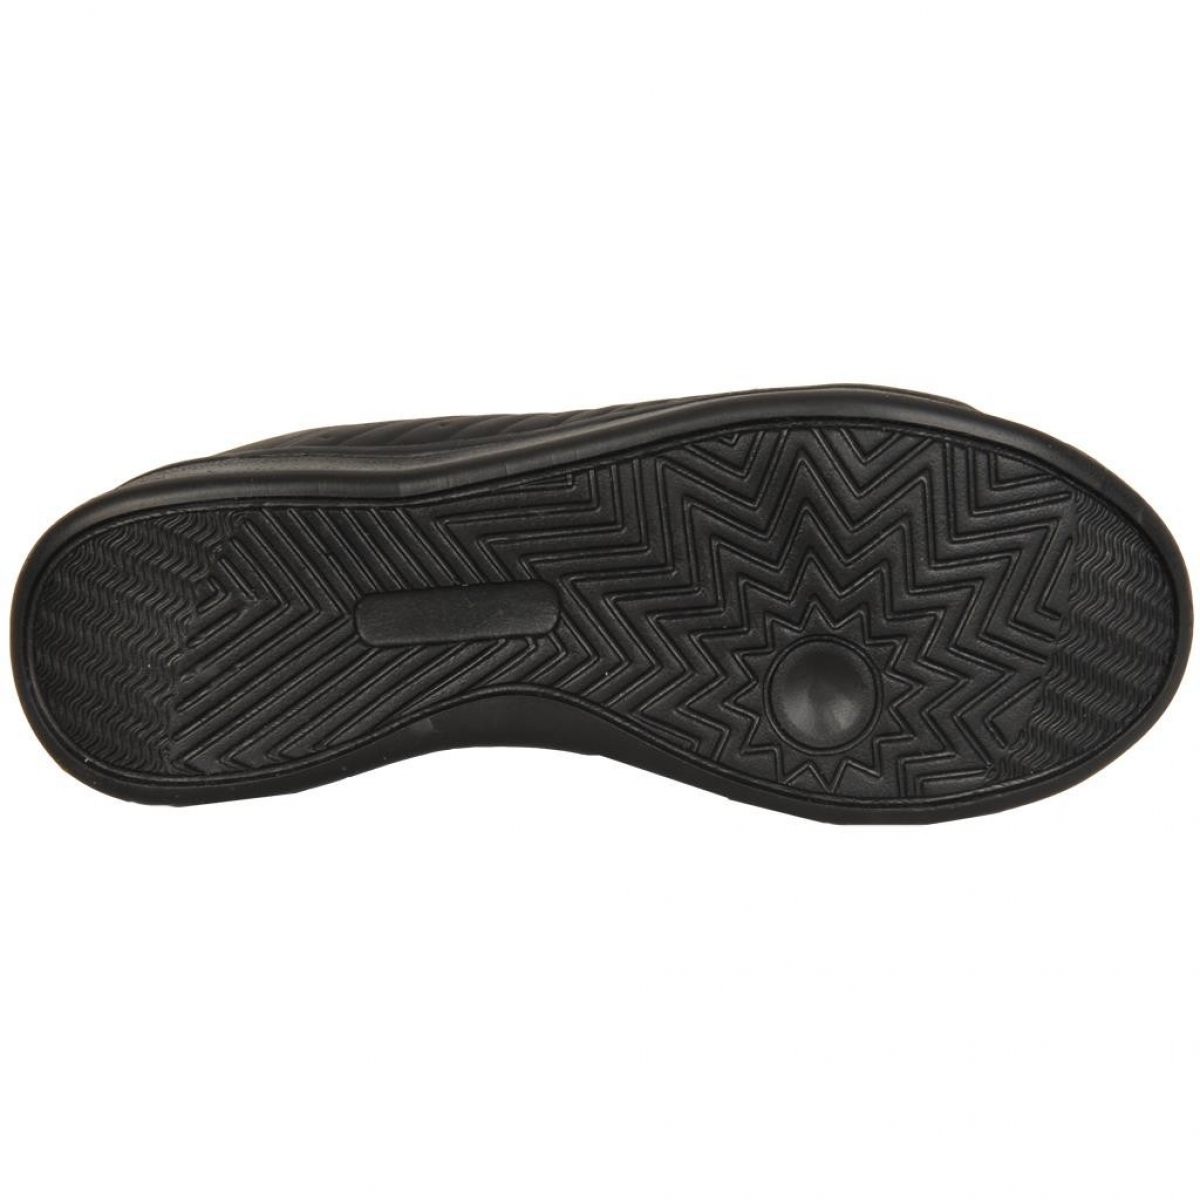 Flo 201-7901 Siyah Günlük Bayan/Erkek Sneaker Spor Ayakkabı. 1